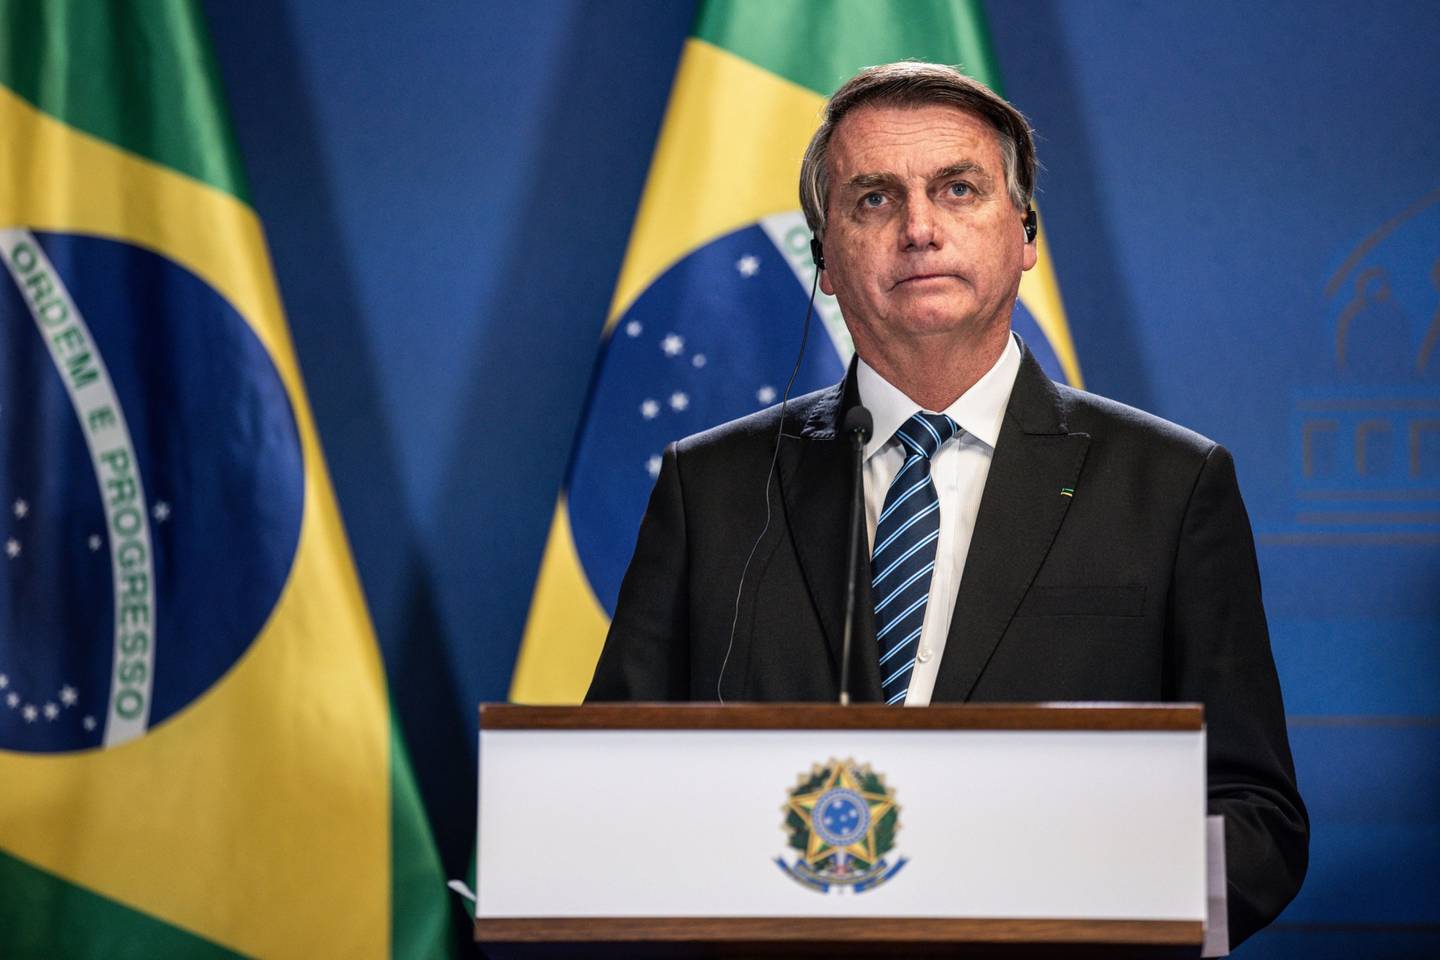 Piora na percepção da economia e perdão a Daniel Silveira fizeram intenções de voto em Bolsonaro pararem de crescer depois de três meses de alta, segundo pesquisa da Genial/Quaest